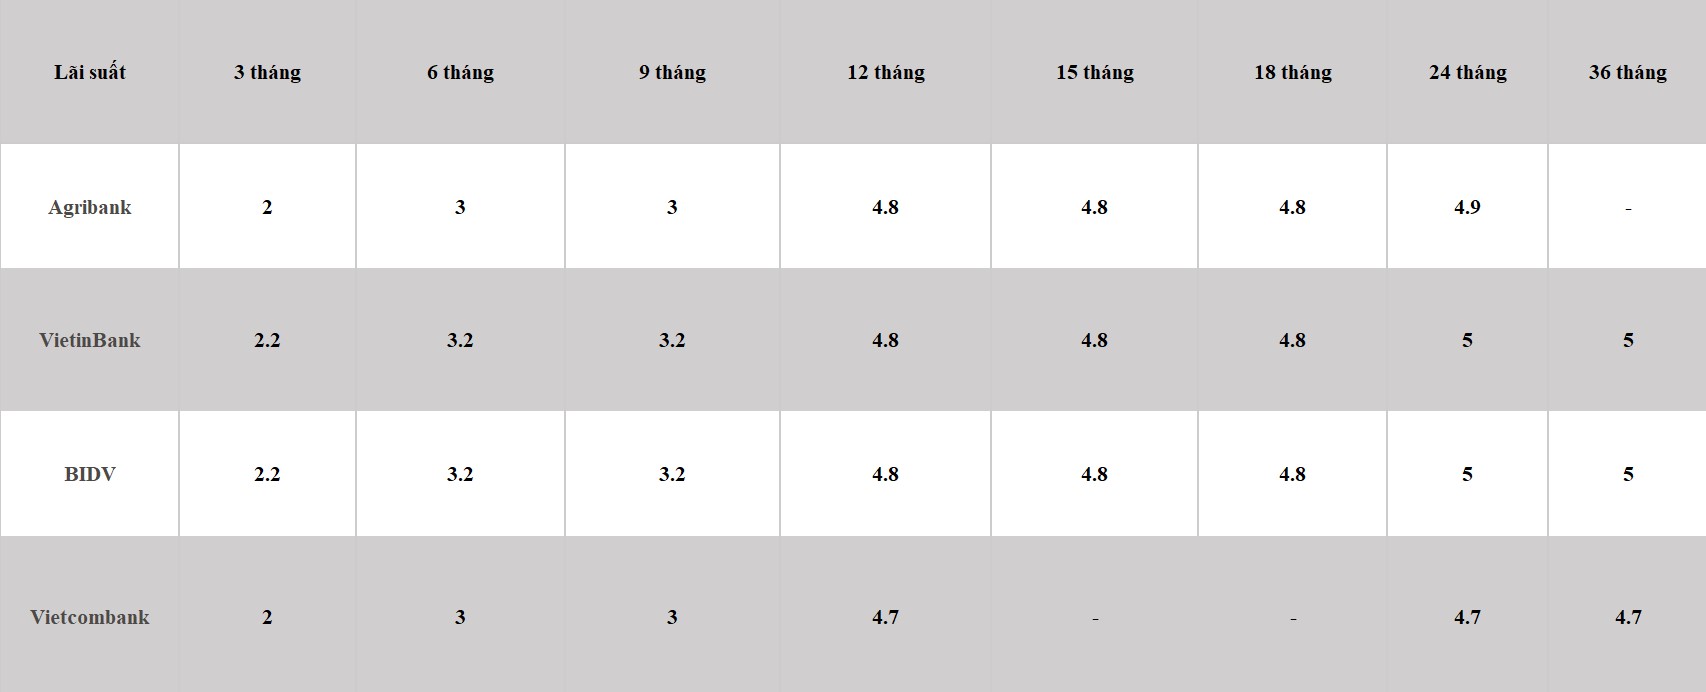 Bảng so sánh lãi suất các kỳ hạn tại Vietcombank, Agribank, VietinBank và BIDV. Số liệu ghi nhận ngày 14.3.2024. Đơn vị tính: %/năm. Bảng: Khương Duy